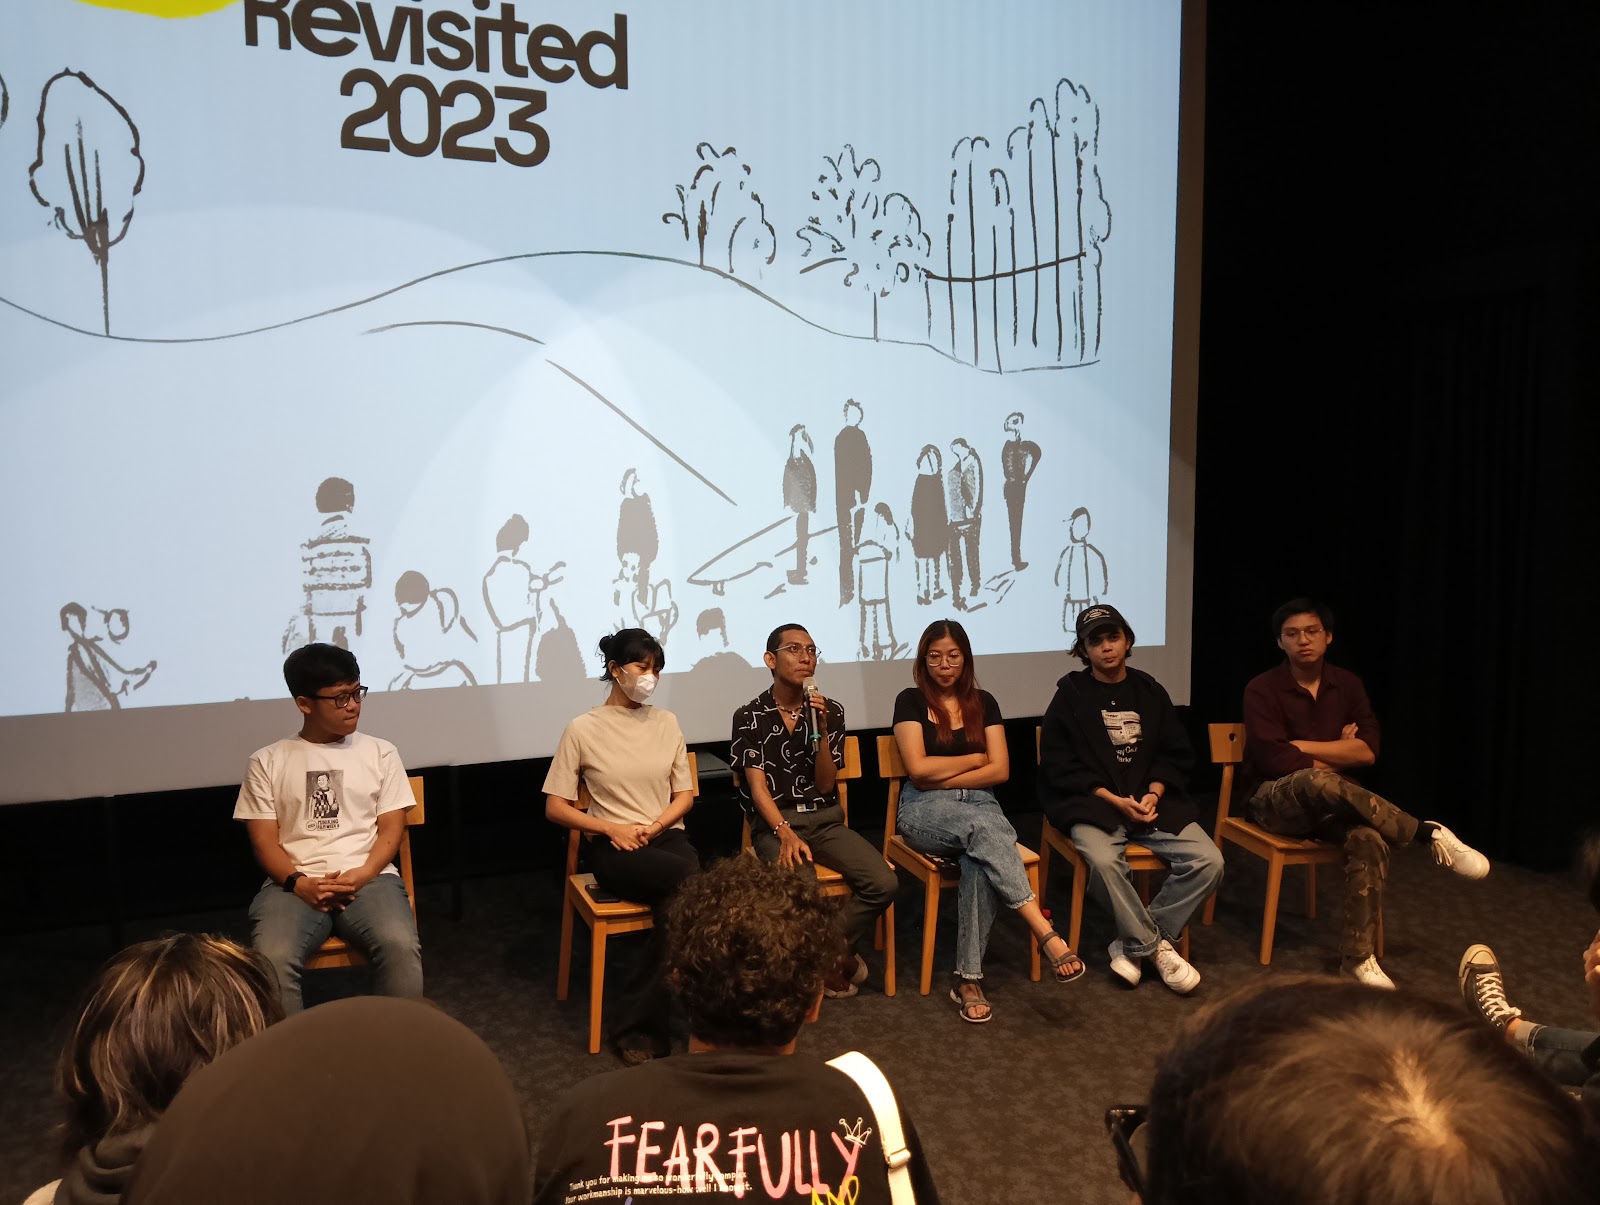 Kru film Bising & film pendek lain yang ditayangkan dalam Revisited 2023